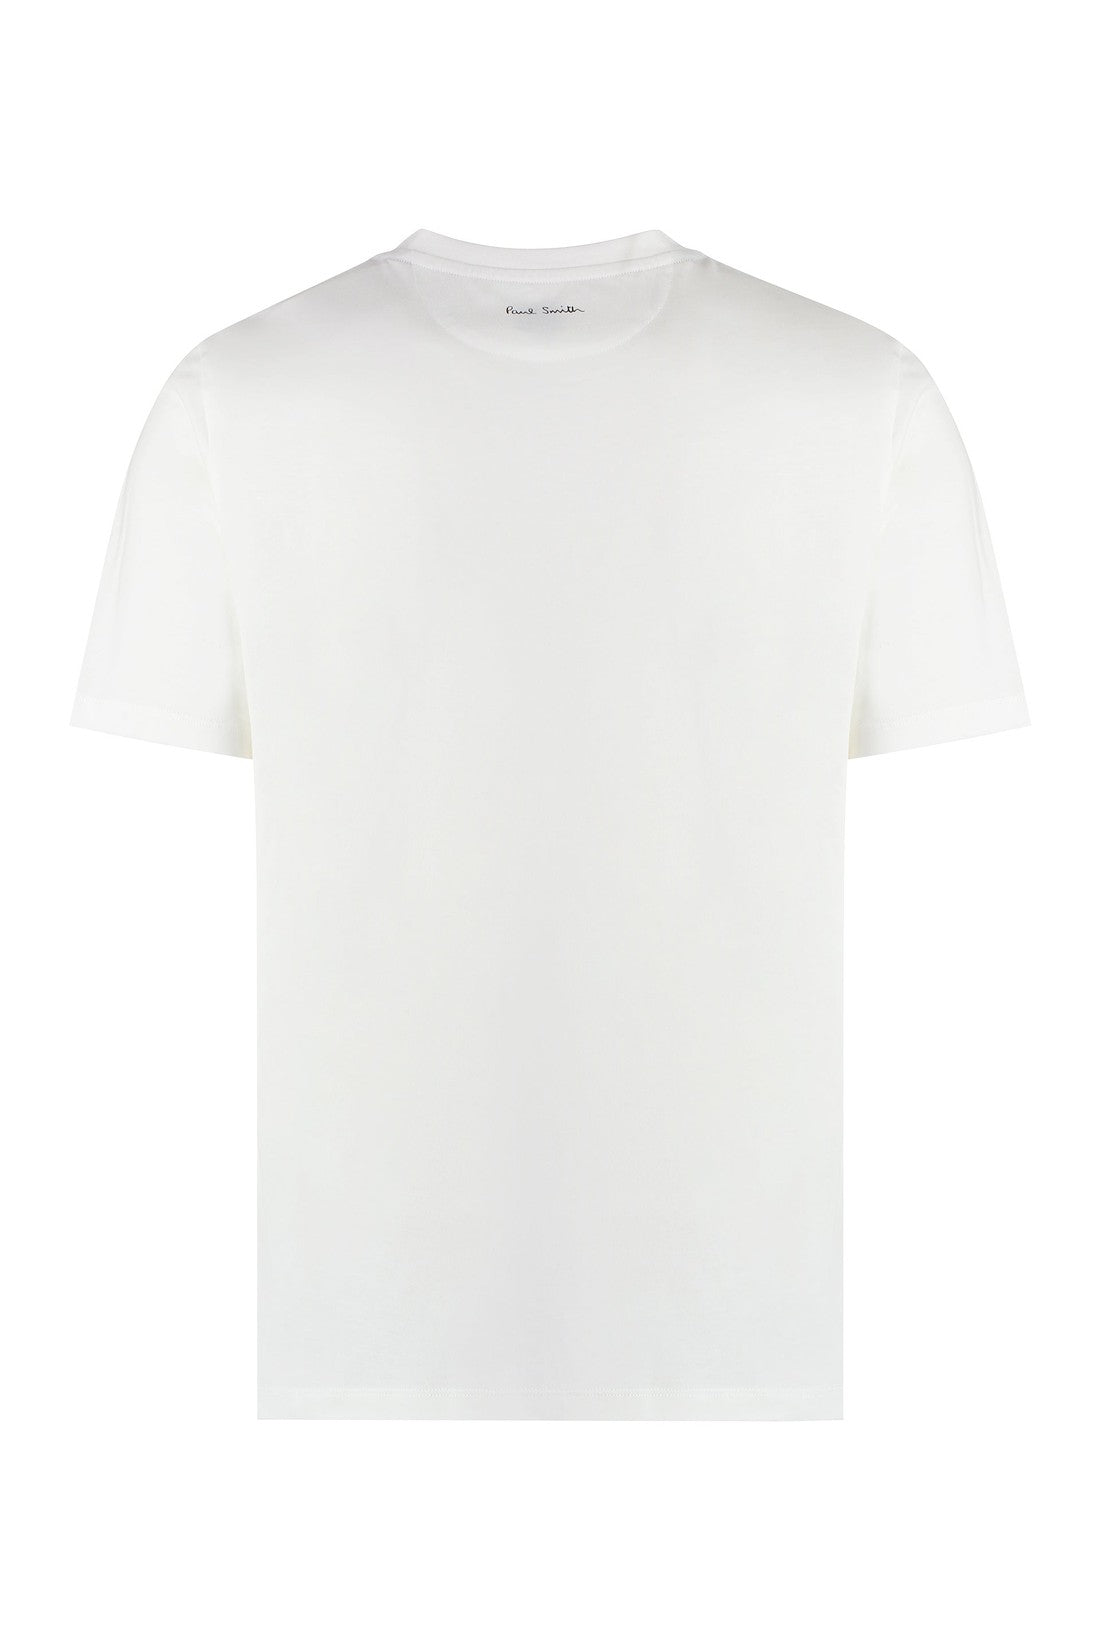 Paul Smith-OUTLET-SALE-Cotton crew-neck T-shirt-ARCHIVIST